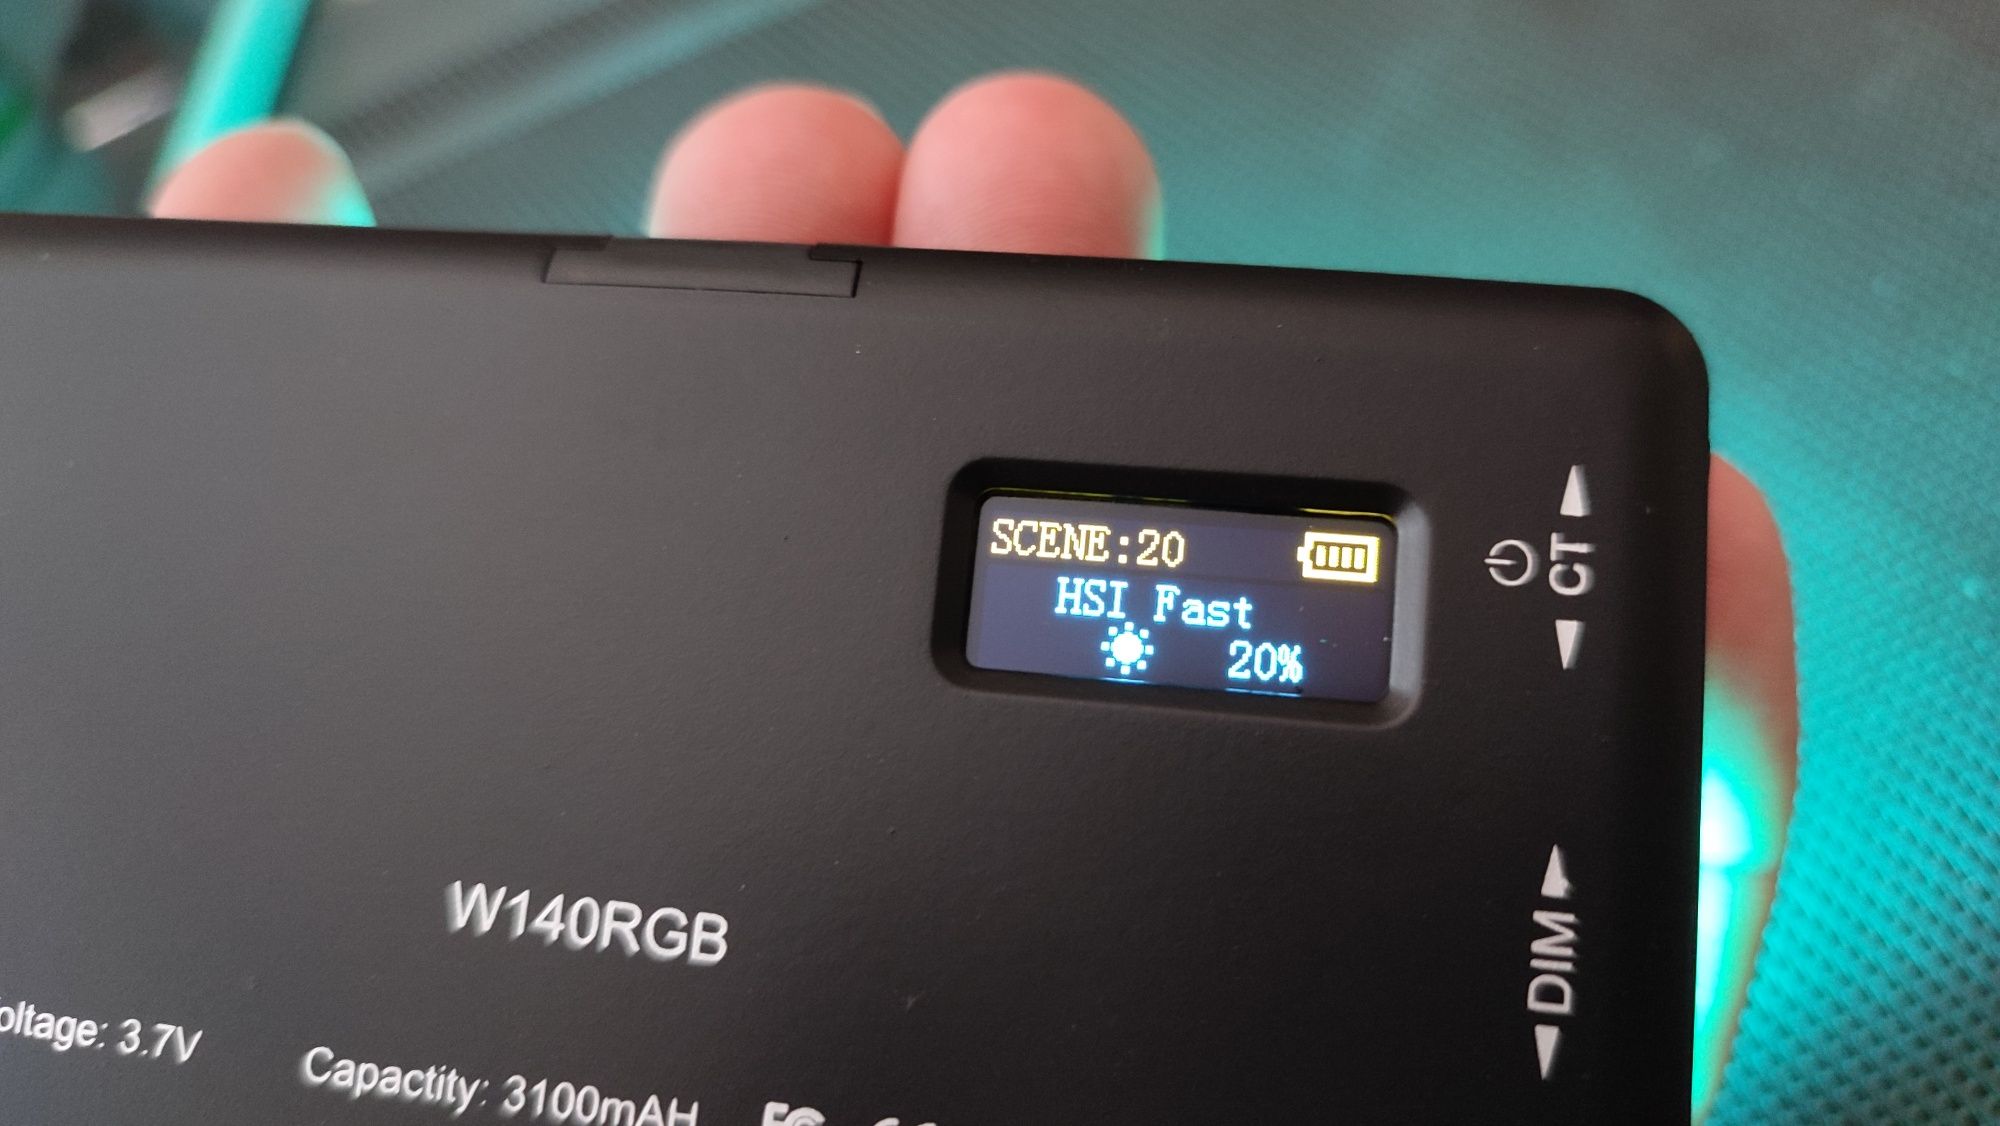 Geekman W140 світло RGB панель лампа фото відео зйомки для YouTube